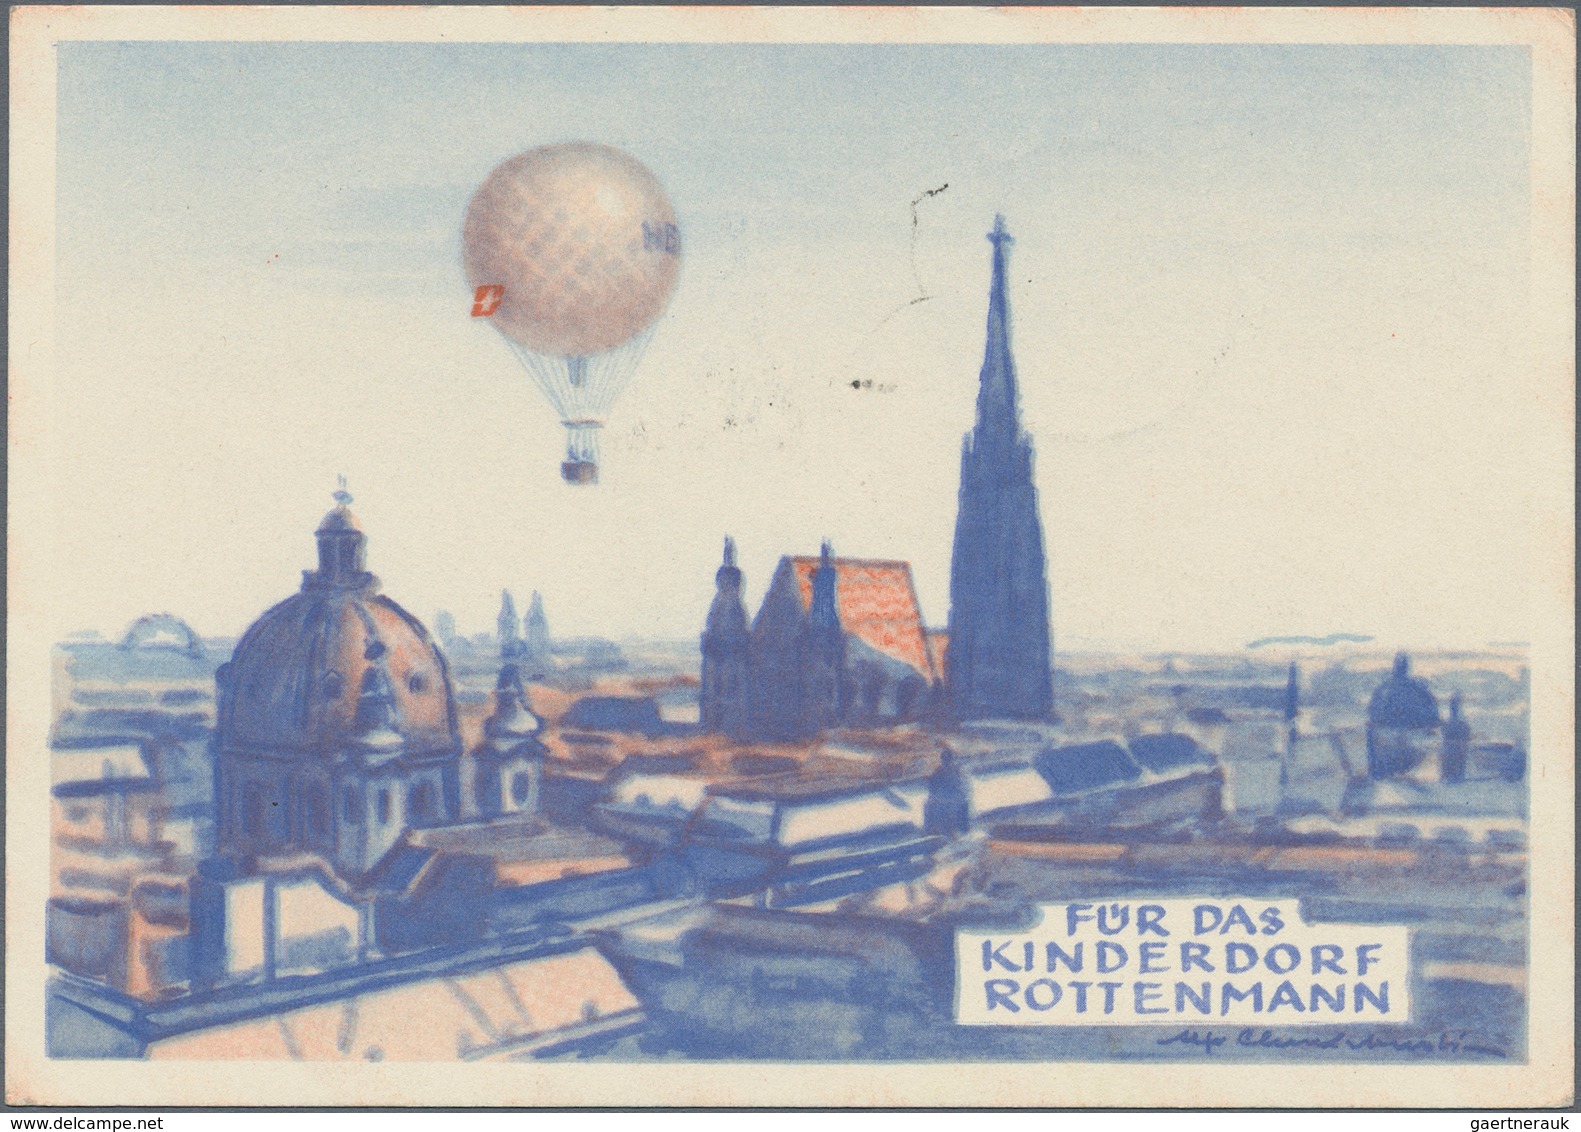 Österreich - Besonderheiten: 1955, BALLONPOST - Zuleitung BAHRAIN: Pro Juventute Postkarte Als Zulei - Andere & Zonder Classificatie